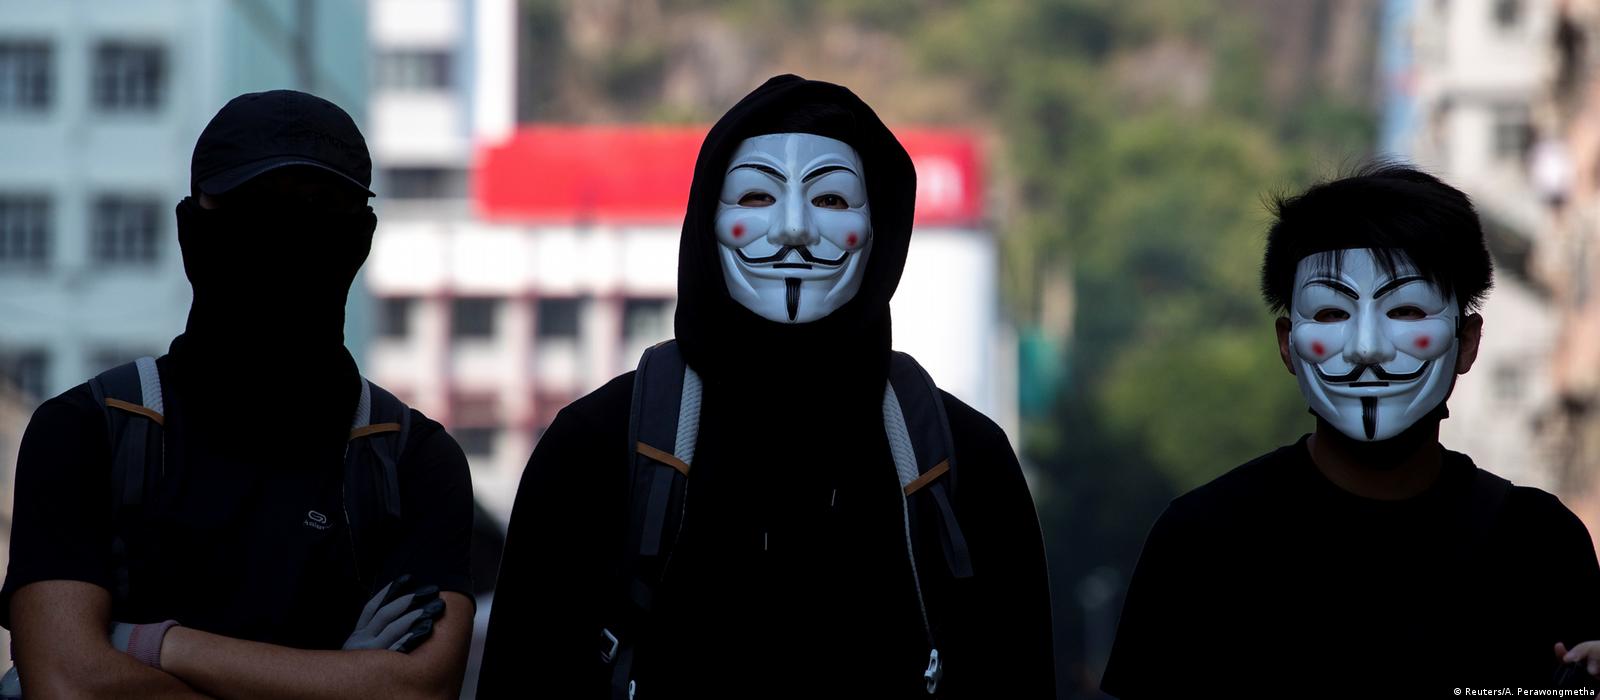 Hong Kong: Protests after face mask ban – DW 10/05/2019